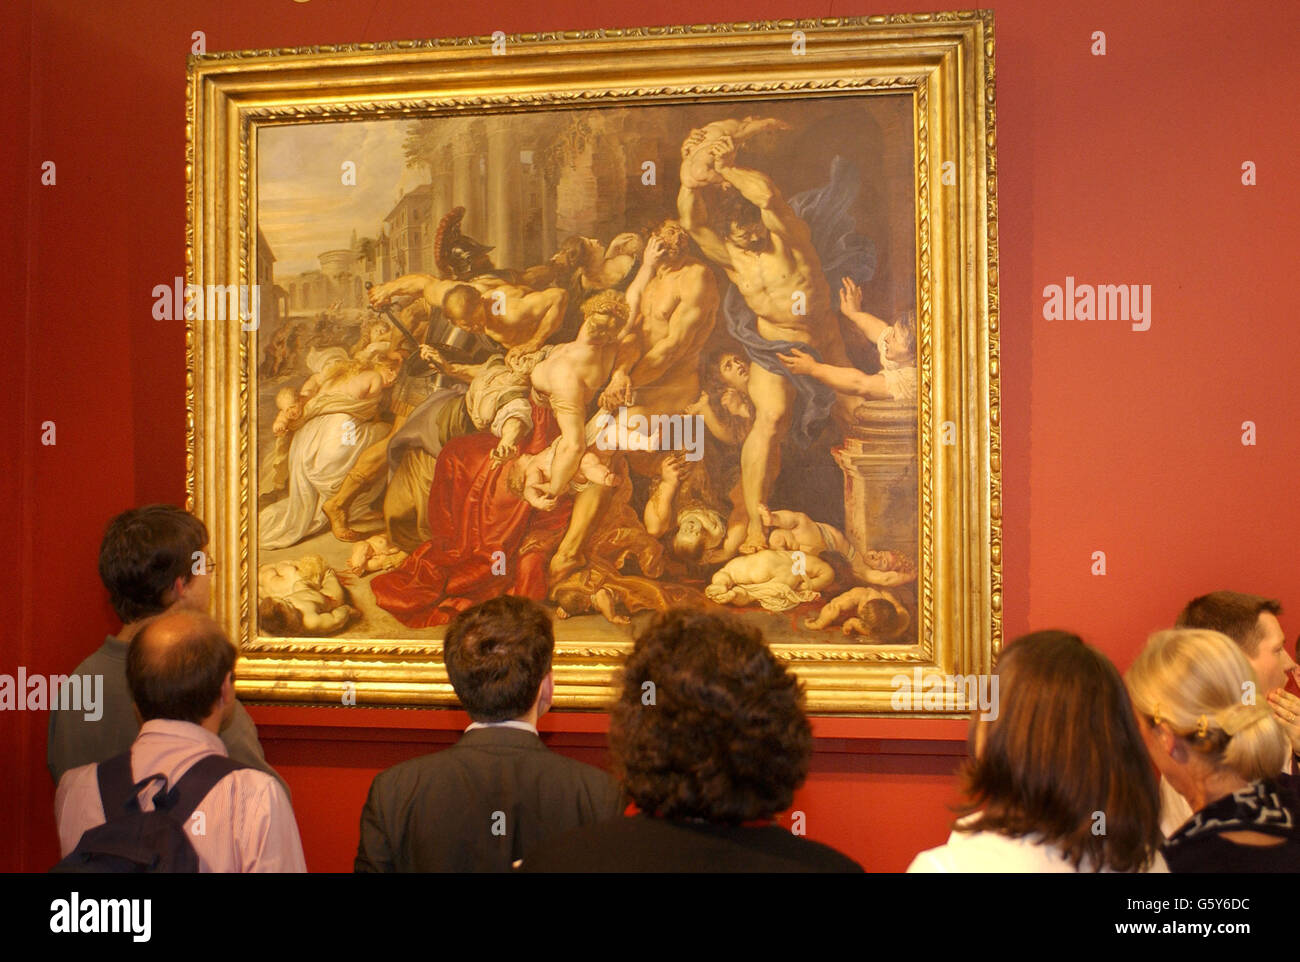 Il massacro degli Innocenti, circa 1609-11 dall'artista fiammingo del XVII secolo Peter Paul Rubens, è visto a Sotheby' a Londra, dove il dipinto aveva venduto in precedenza questa sera per 49,506,650 milioni durante una vendita di opere d'arte Old Master. Foto Stock